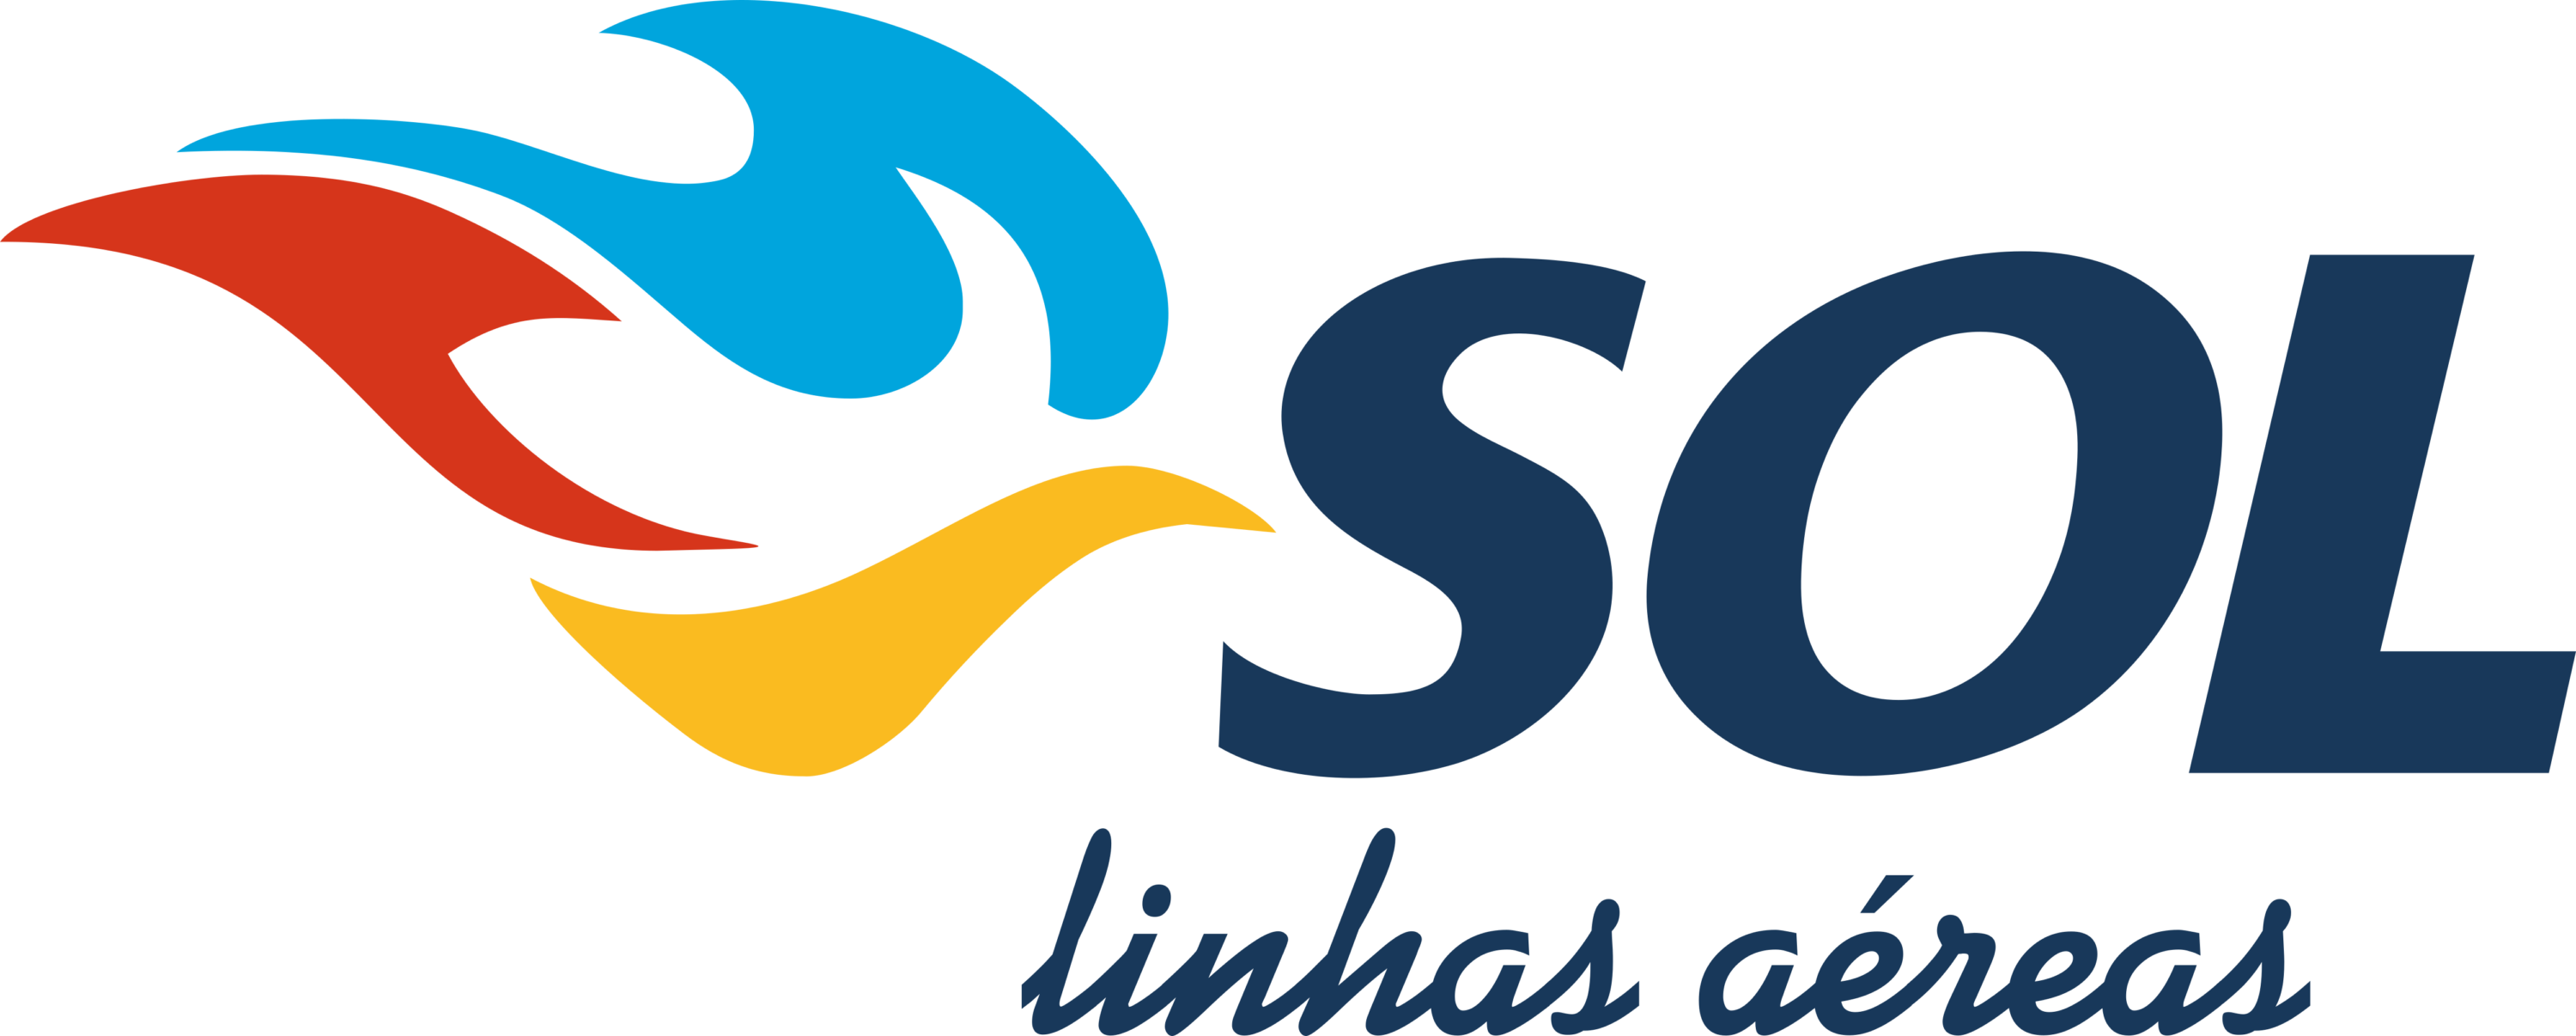 Sol Linhas Aéreas Logo